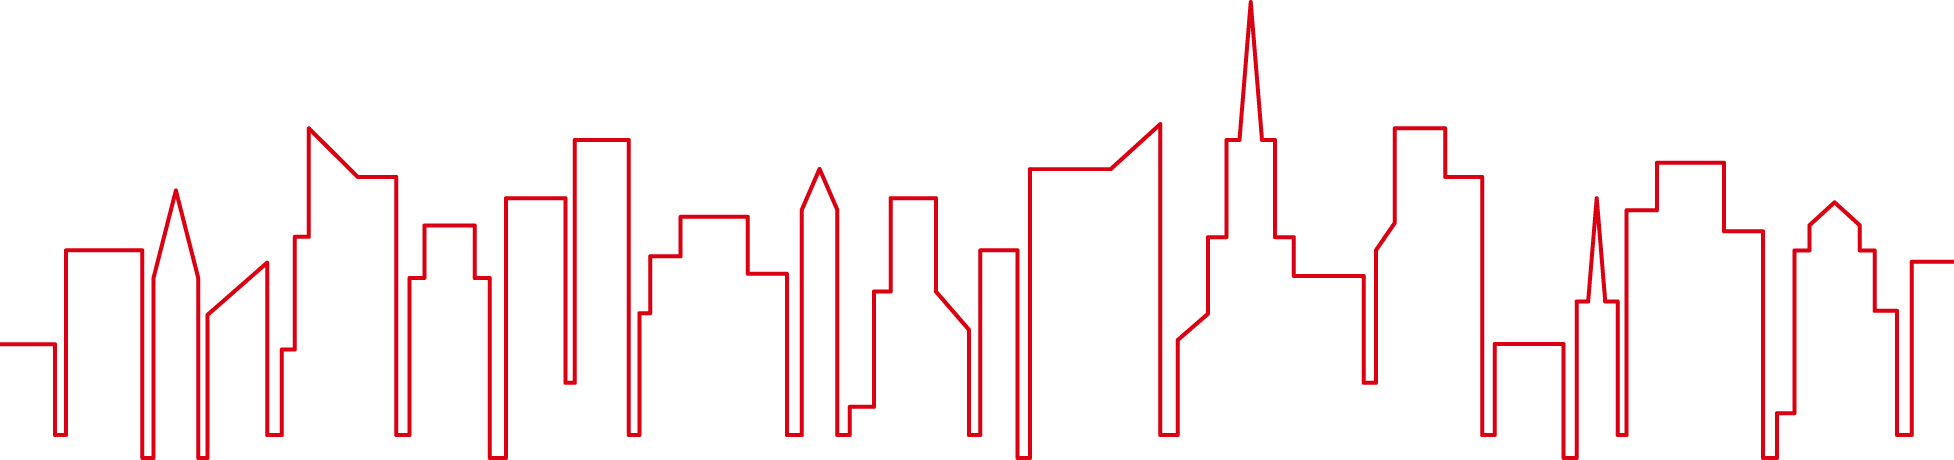 HSBC Skyline